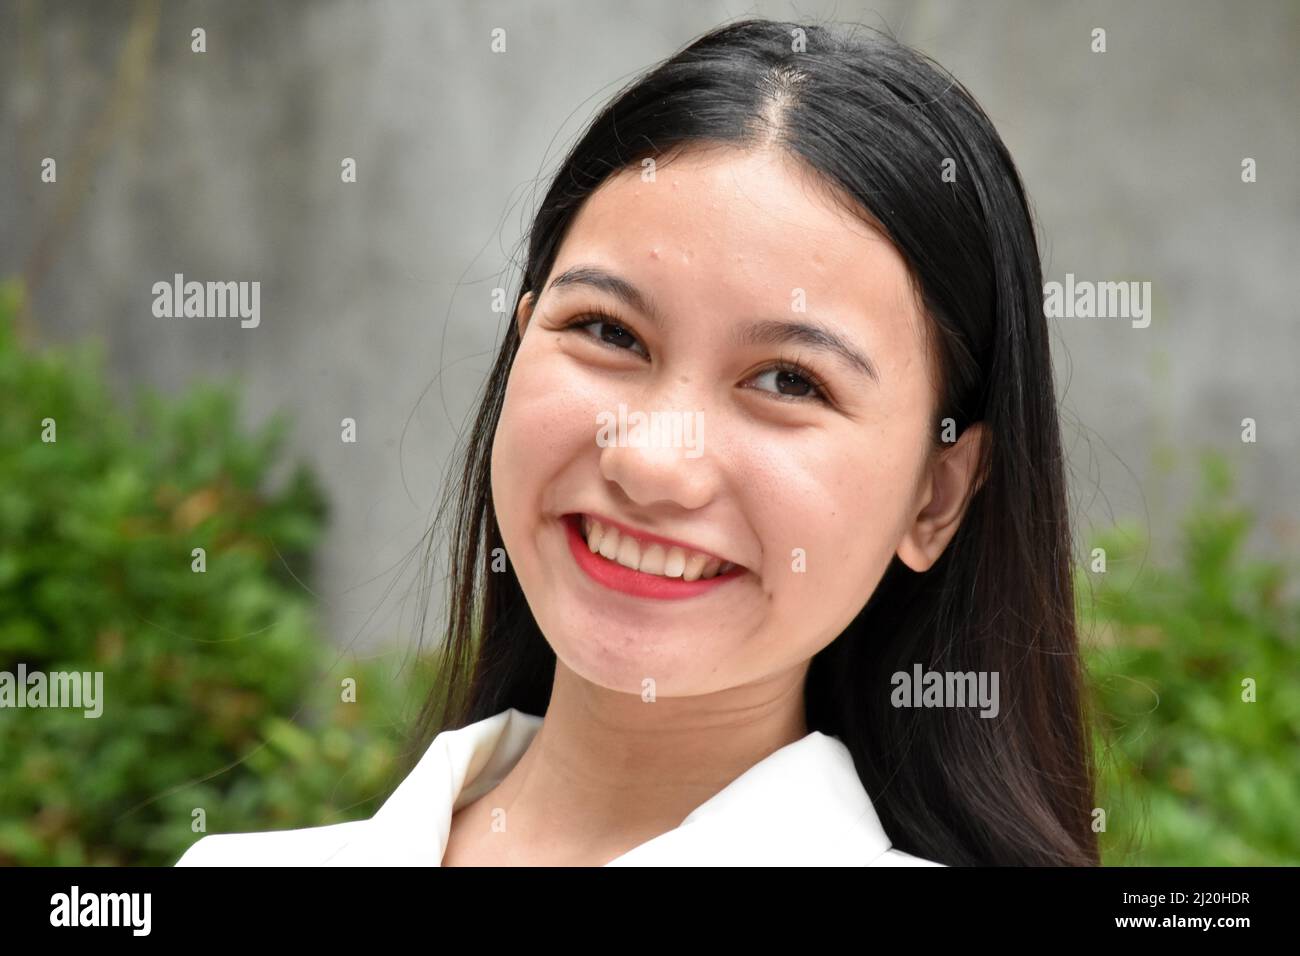 A Smiling Asian Woman Closeup Stock Photo